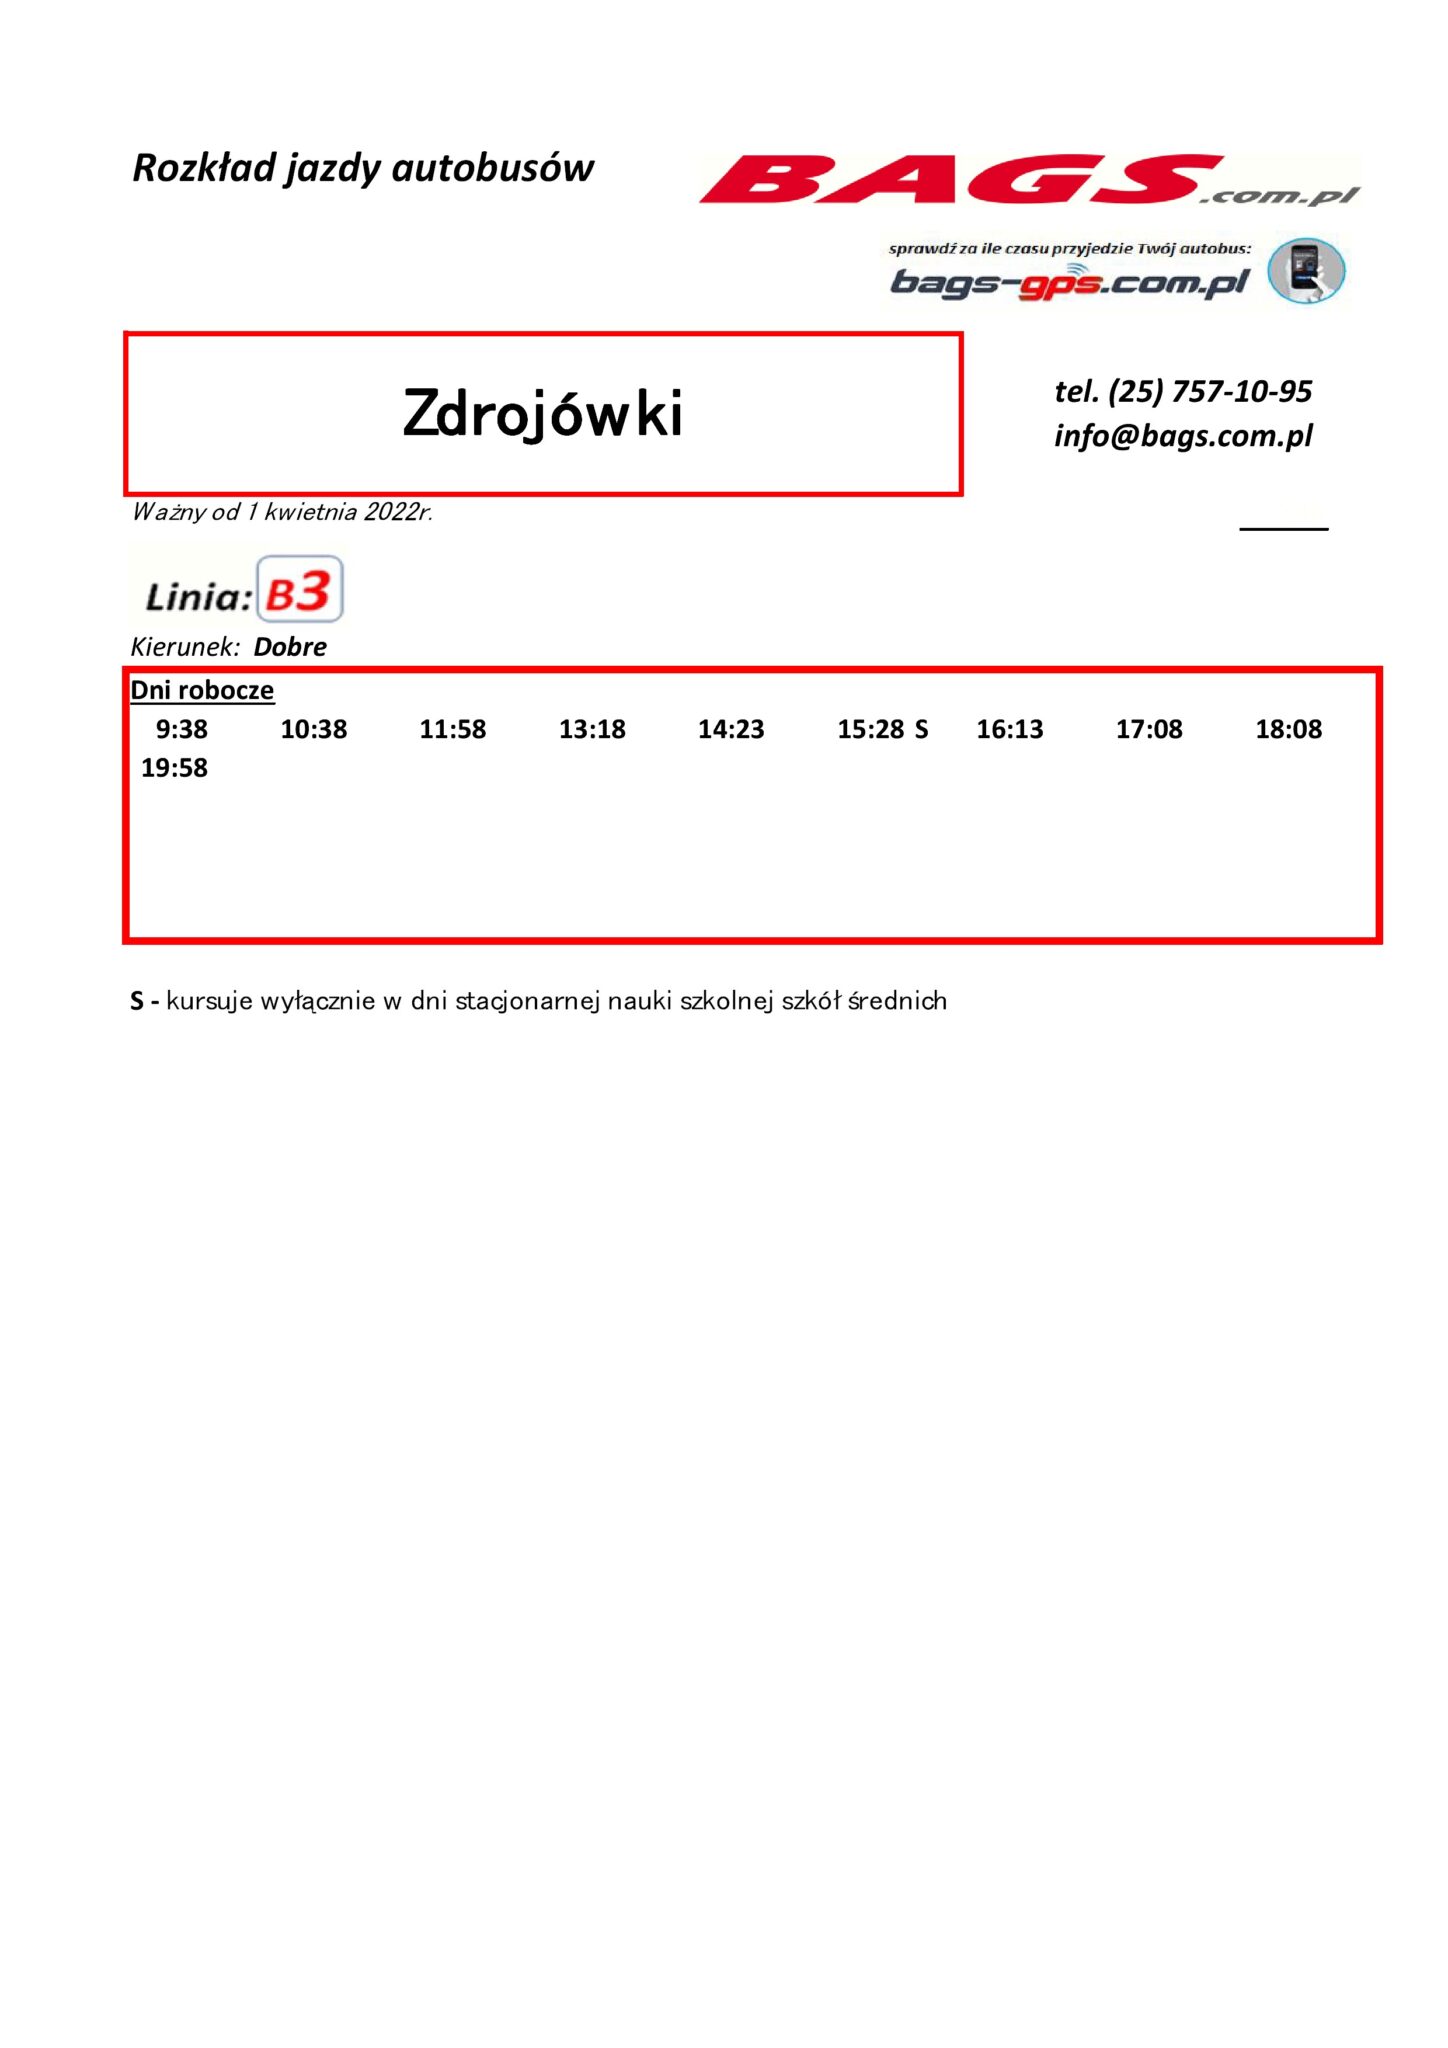 Zdrojowki-1-3-1448x2048